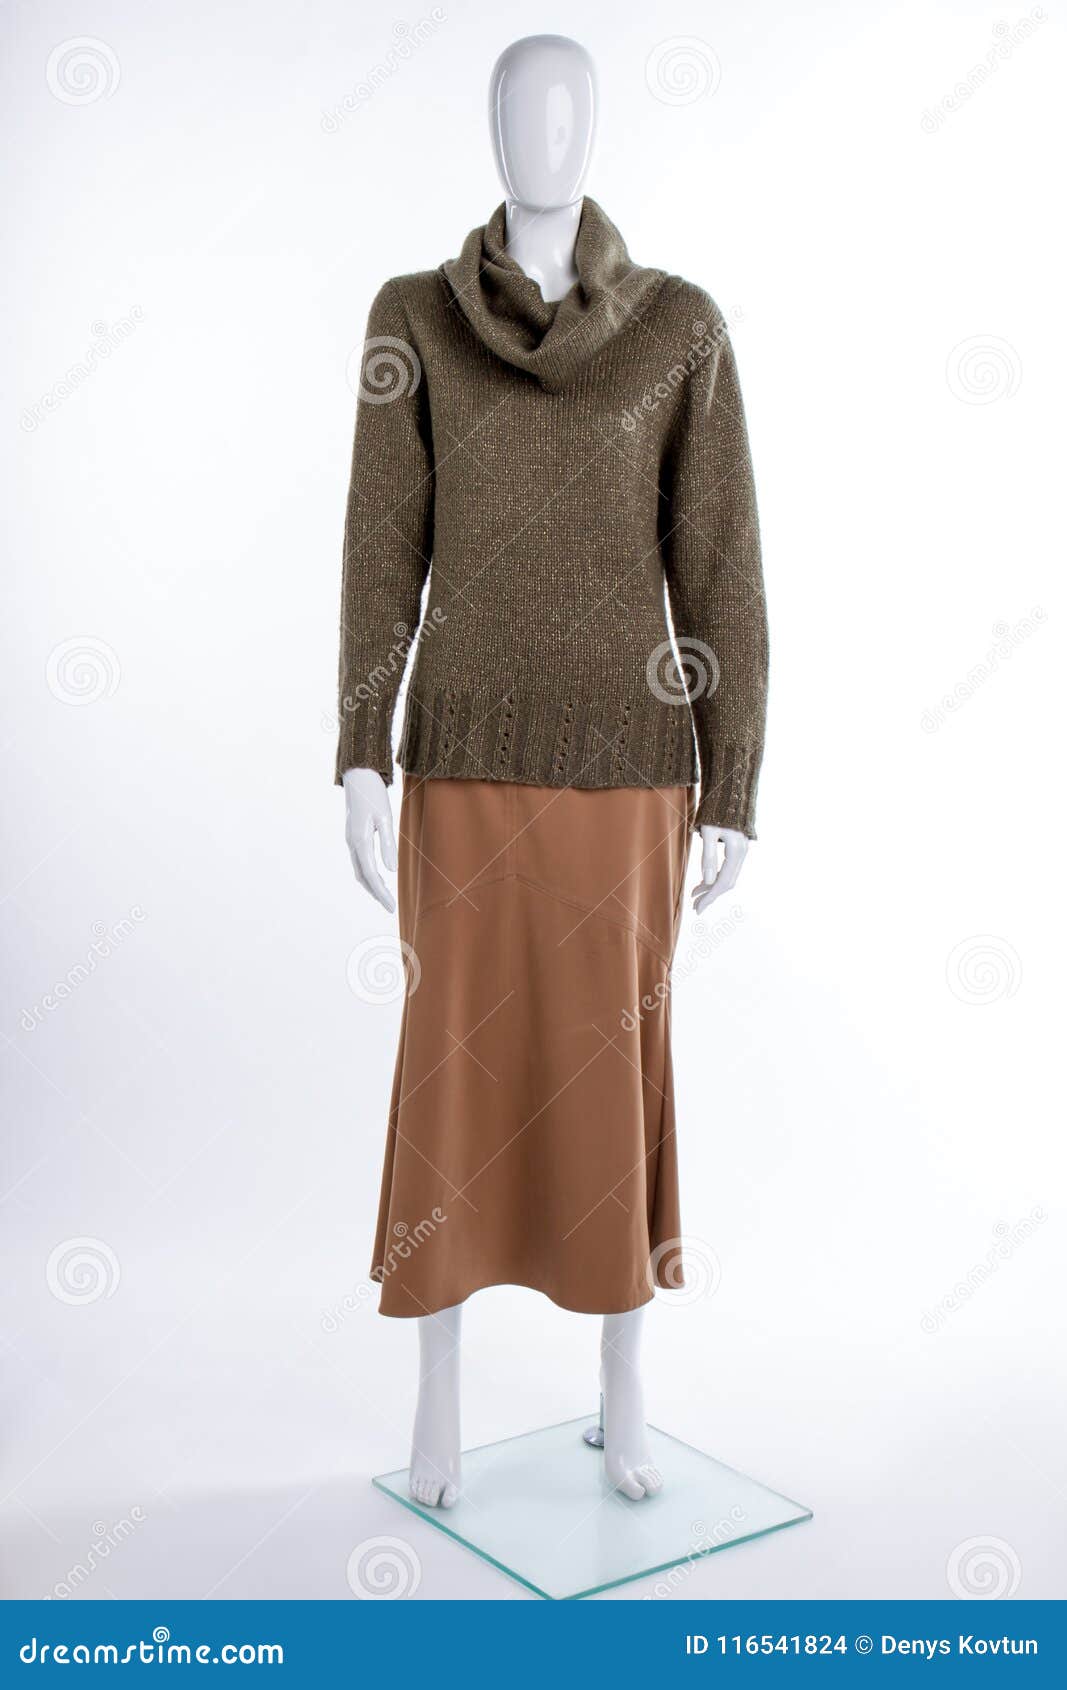 Turtleneck Khaki Sweater on Female Mannequin. Stock Photo - Image of ...